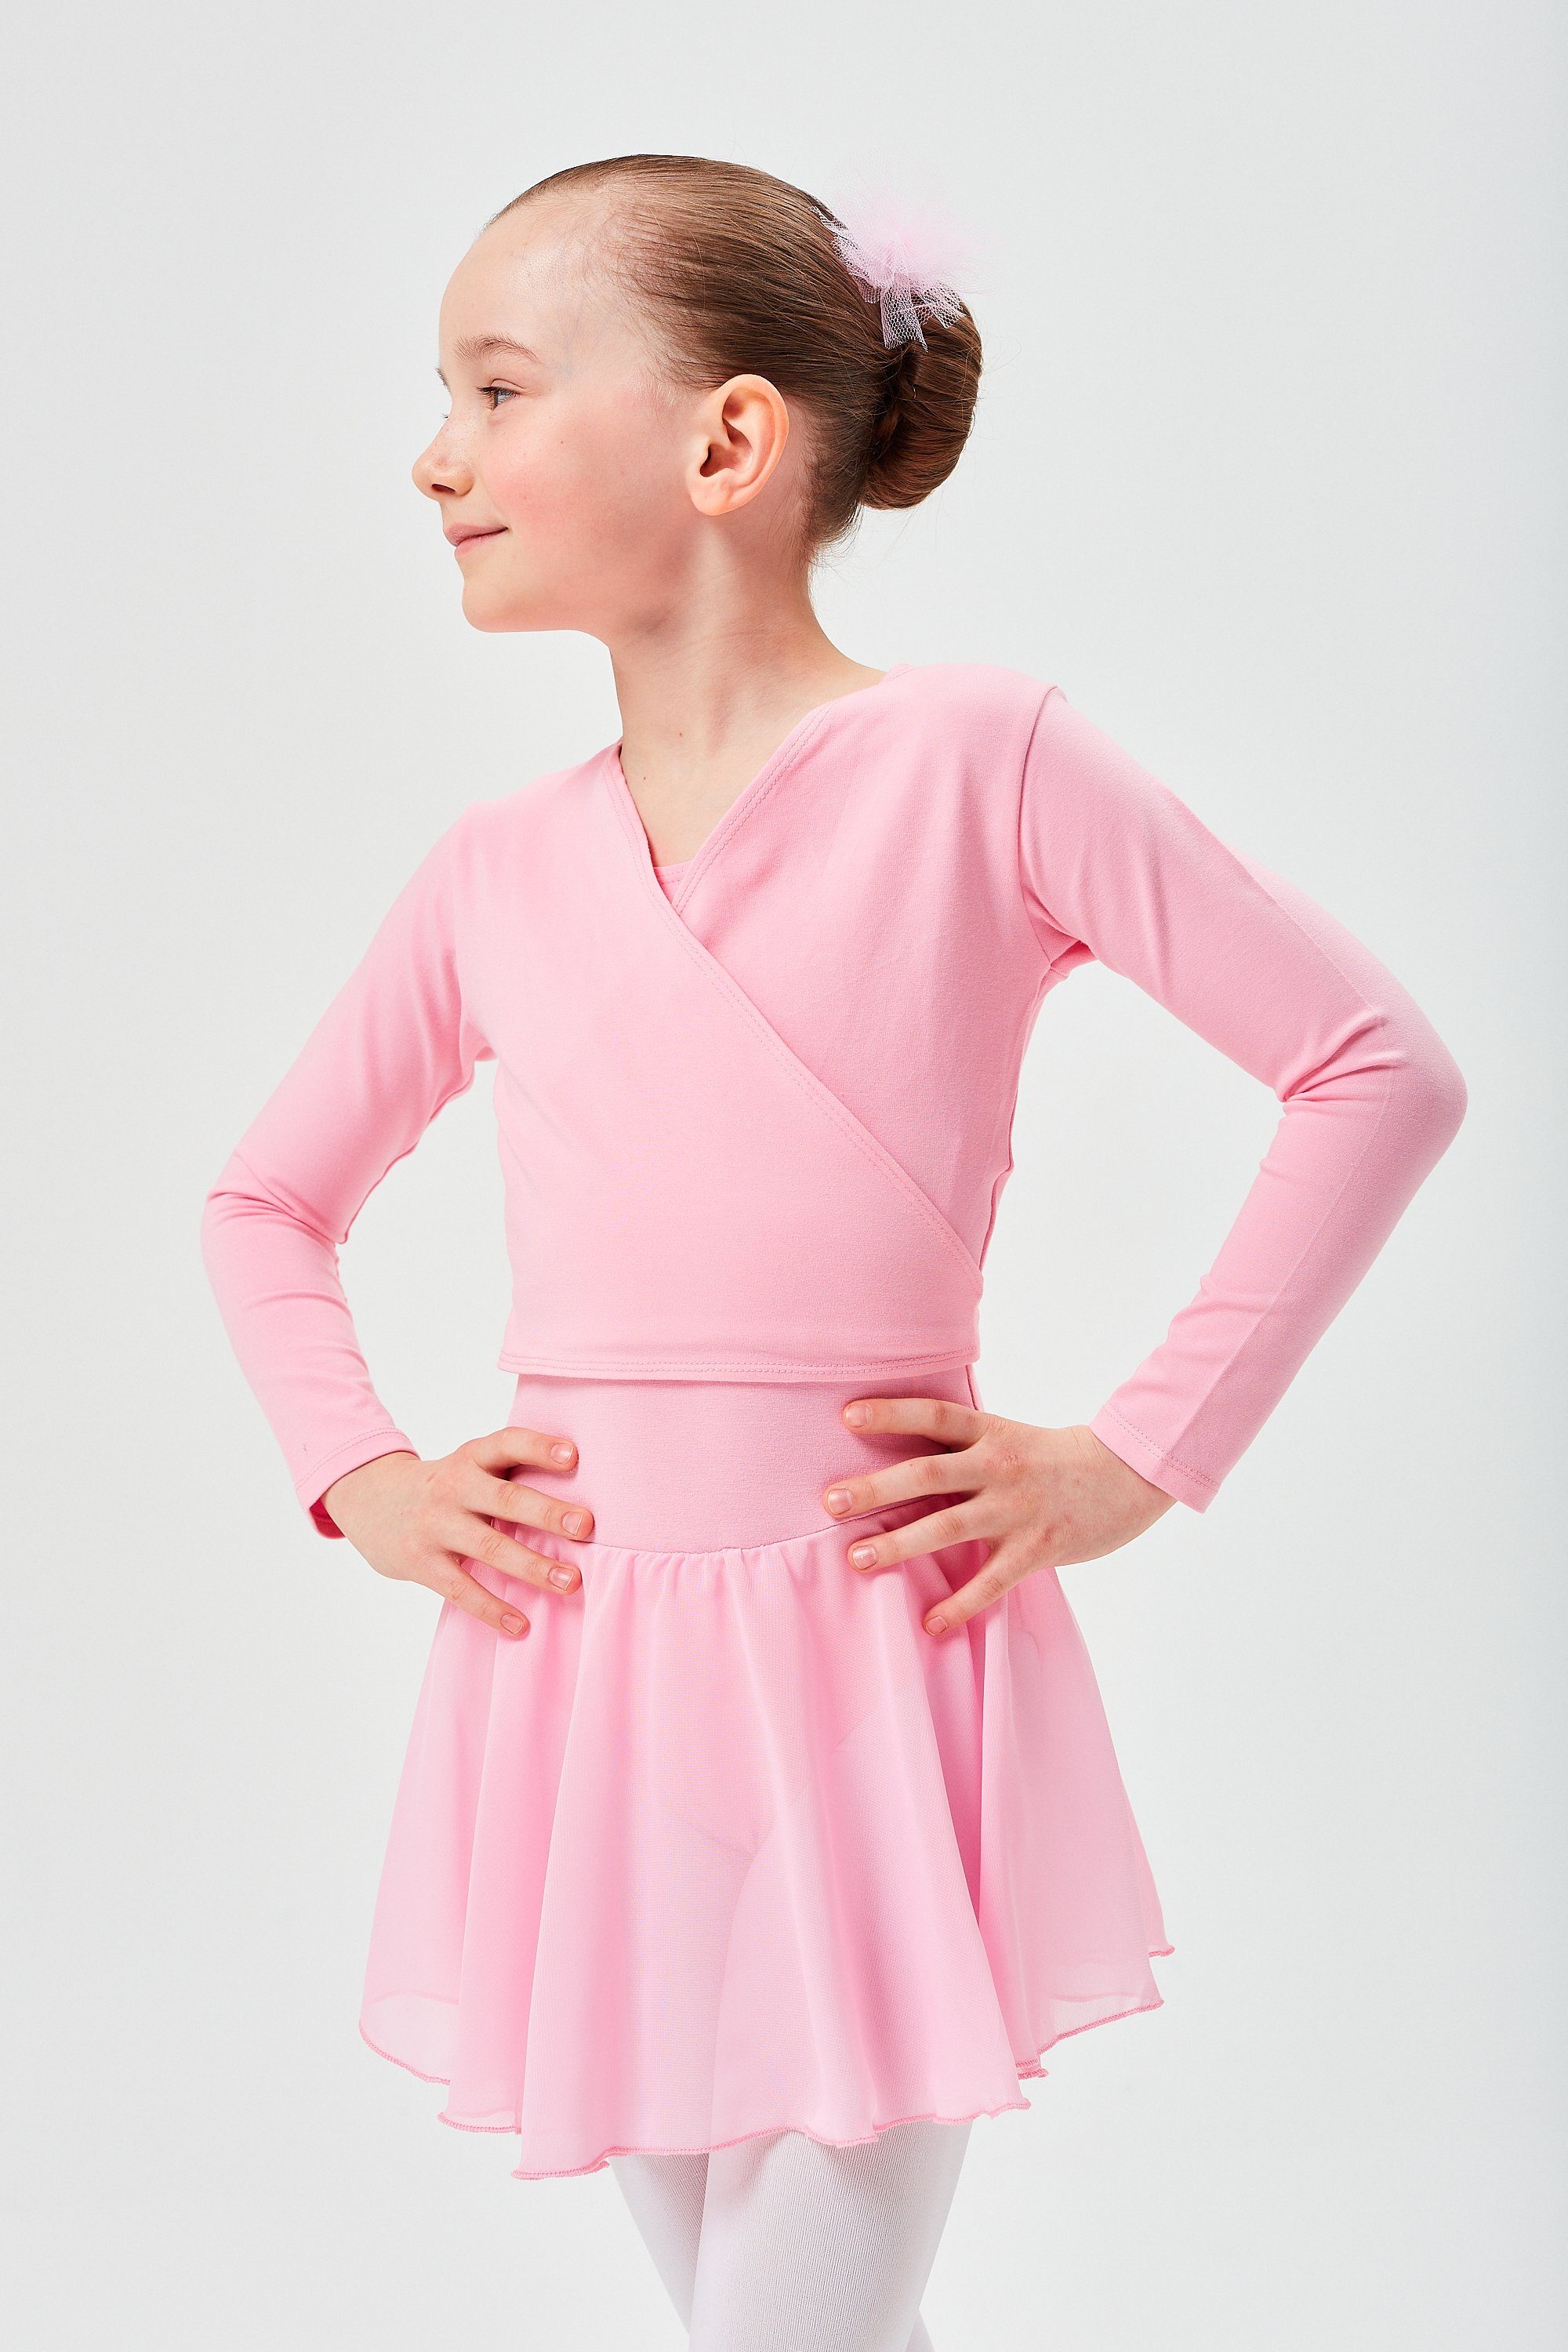 tanzmuster Sweatjacke Ballett Wickelacke Mandy aus weicher Baumwolle Ballettjacke für Mädchen rosa